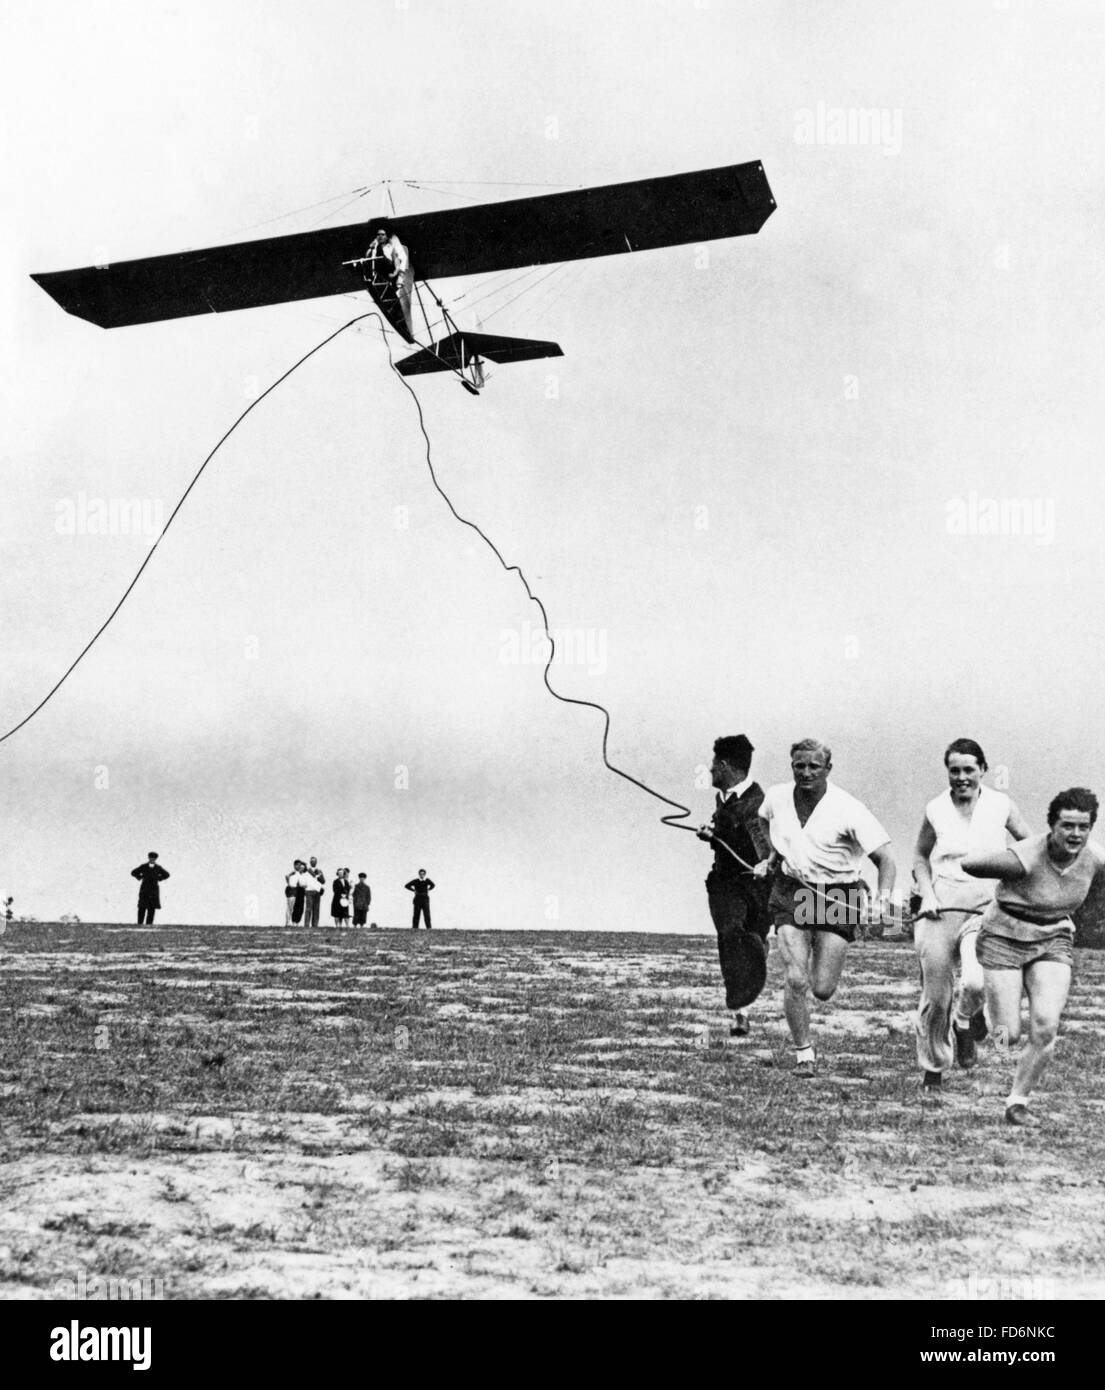 Les demandeurs de licence de pilote démarrer un parapente, 1930 Banque D'Images